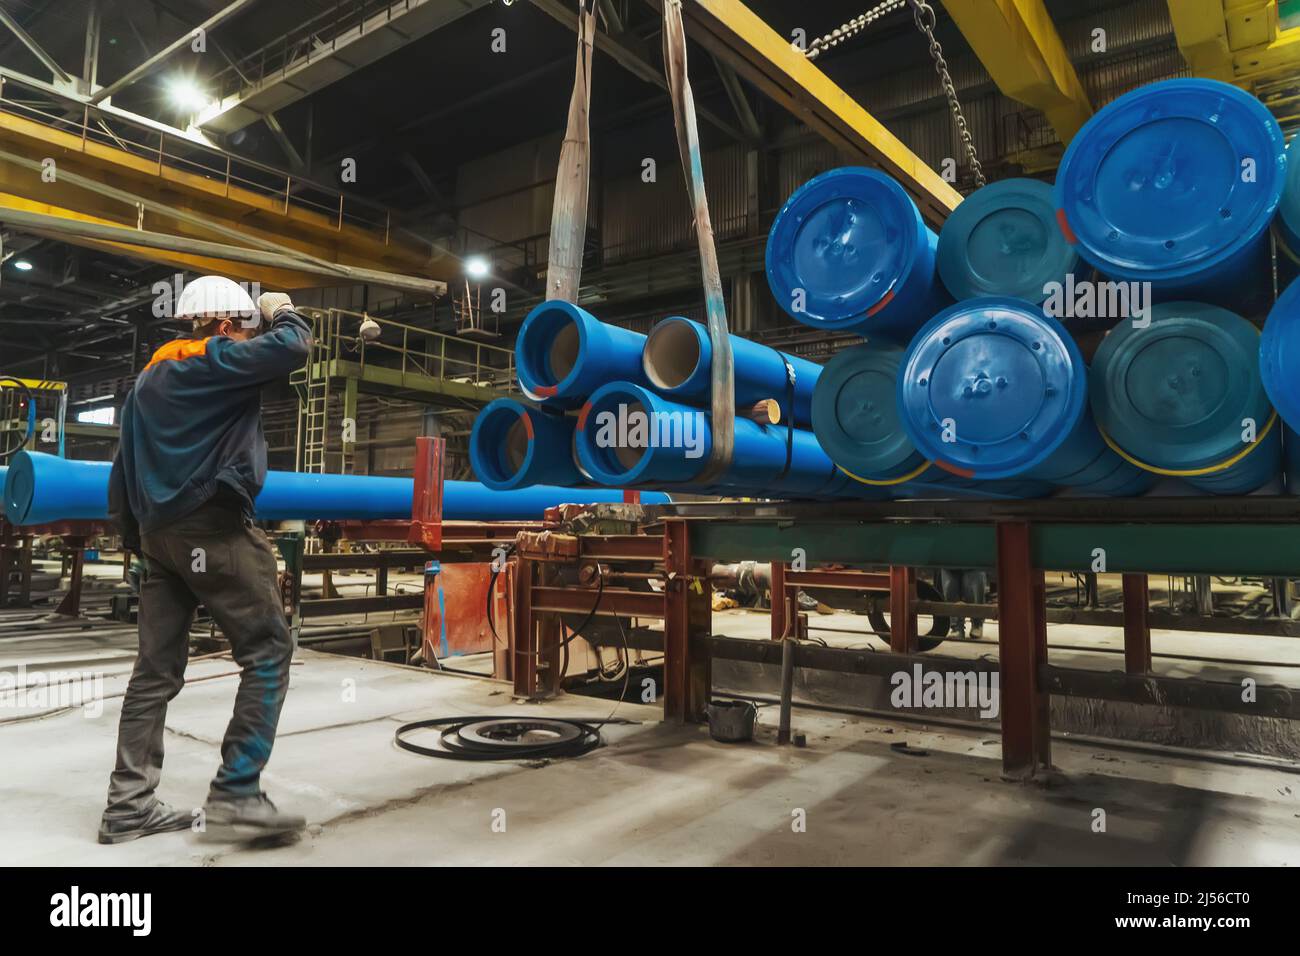 Envío de tuberías metálicas para tuberías de gas o agua en el piso de la fábrica. Foto de stock